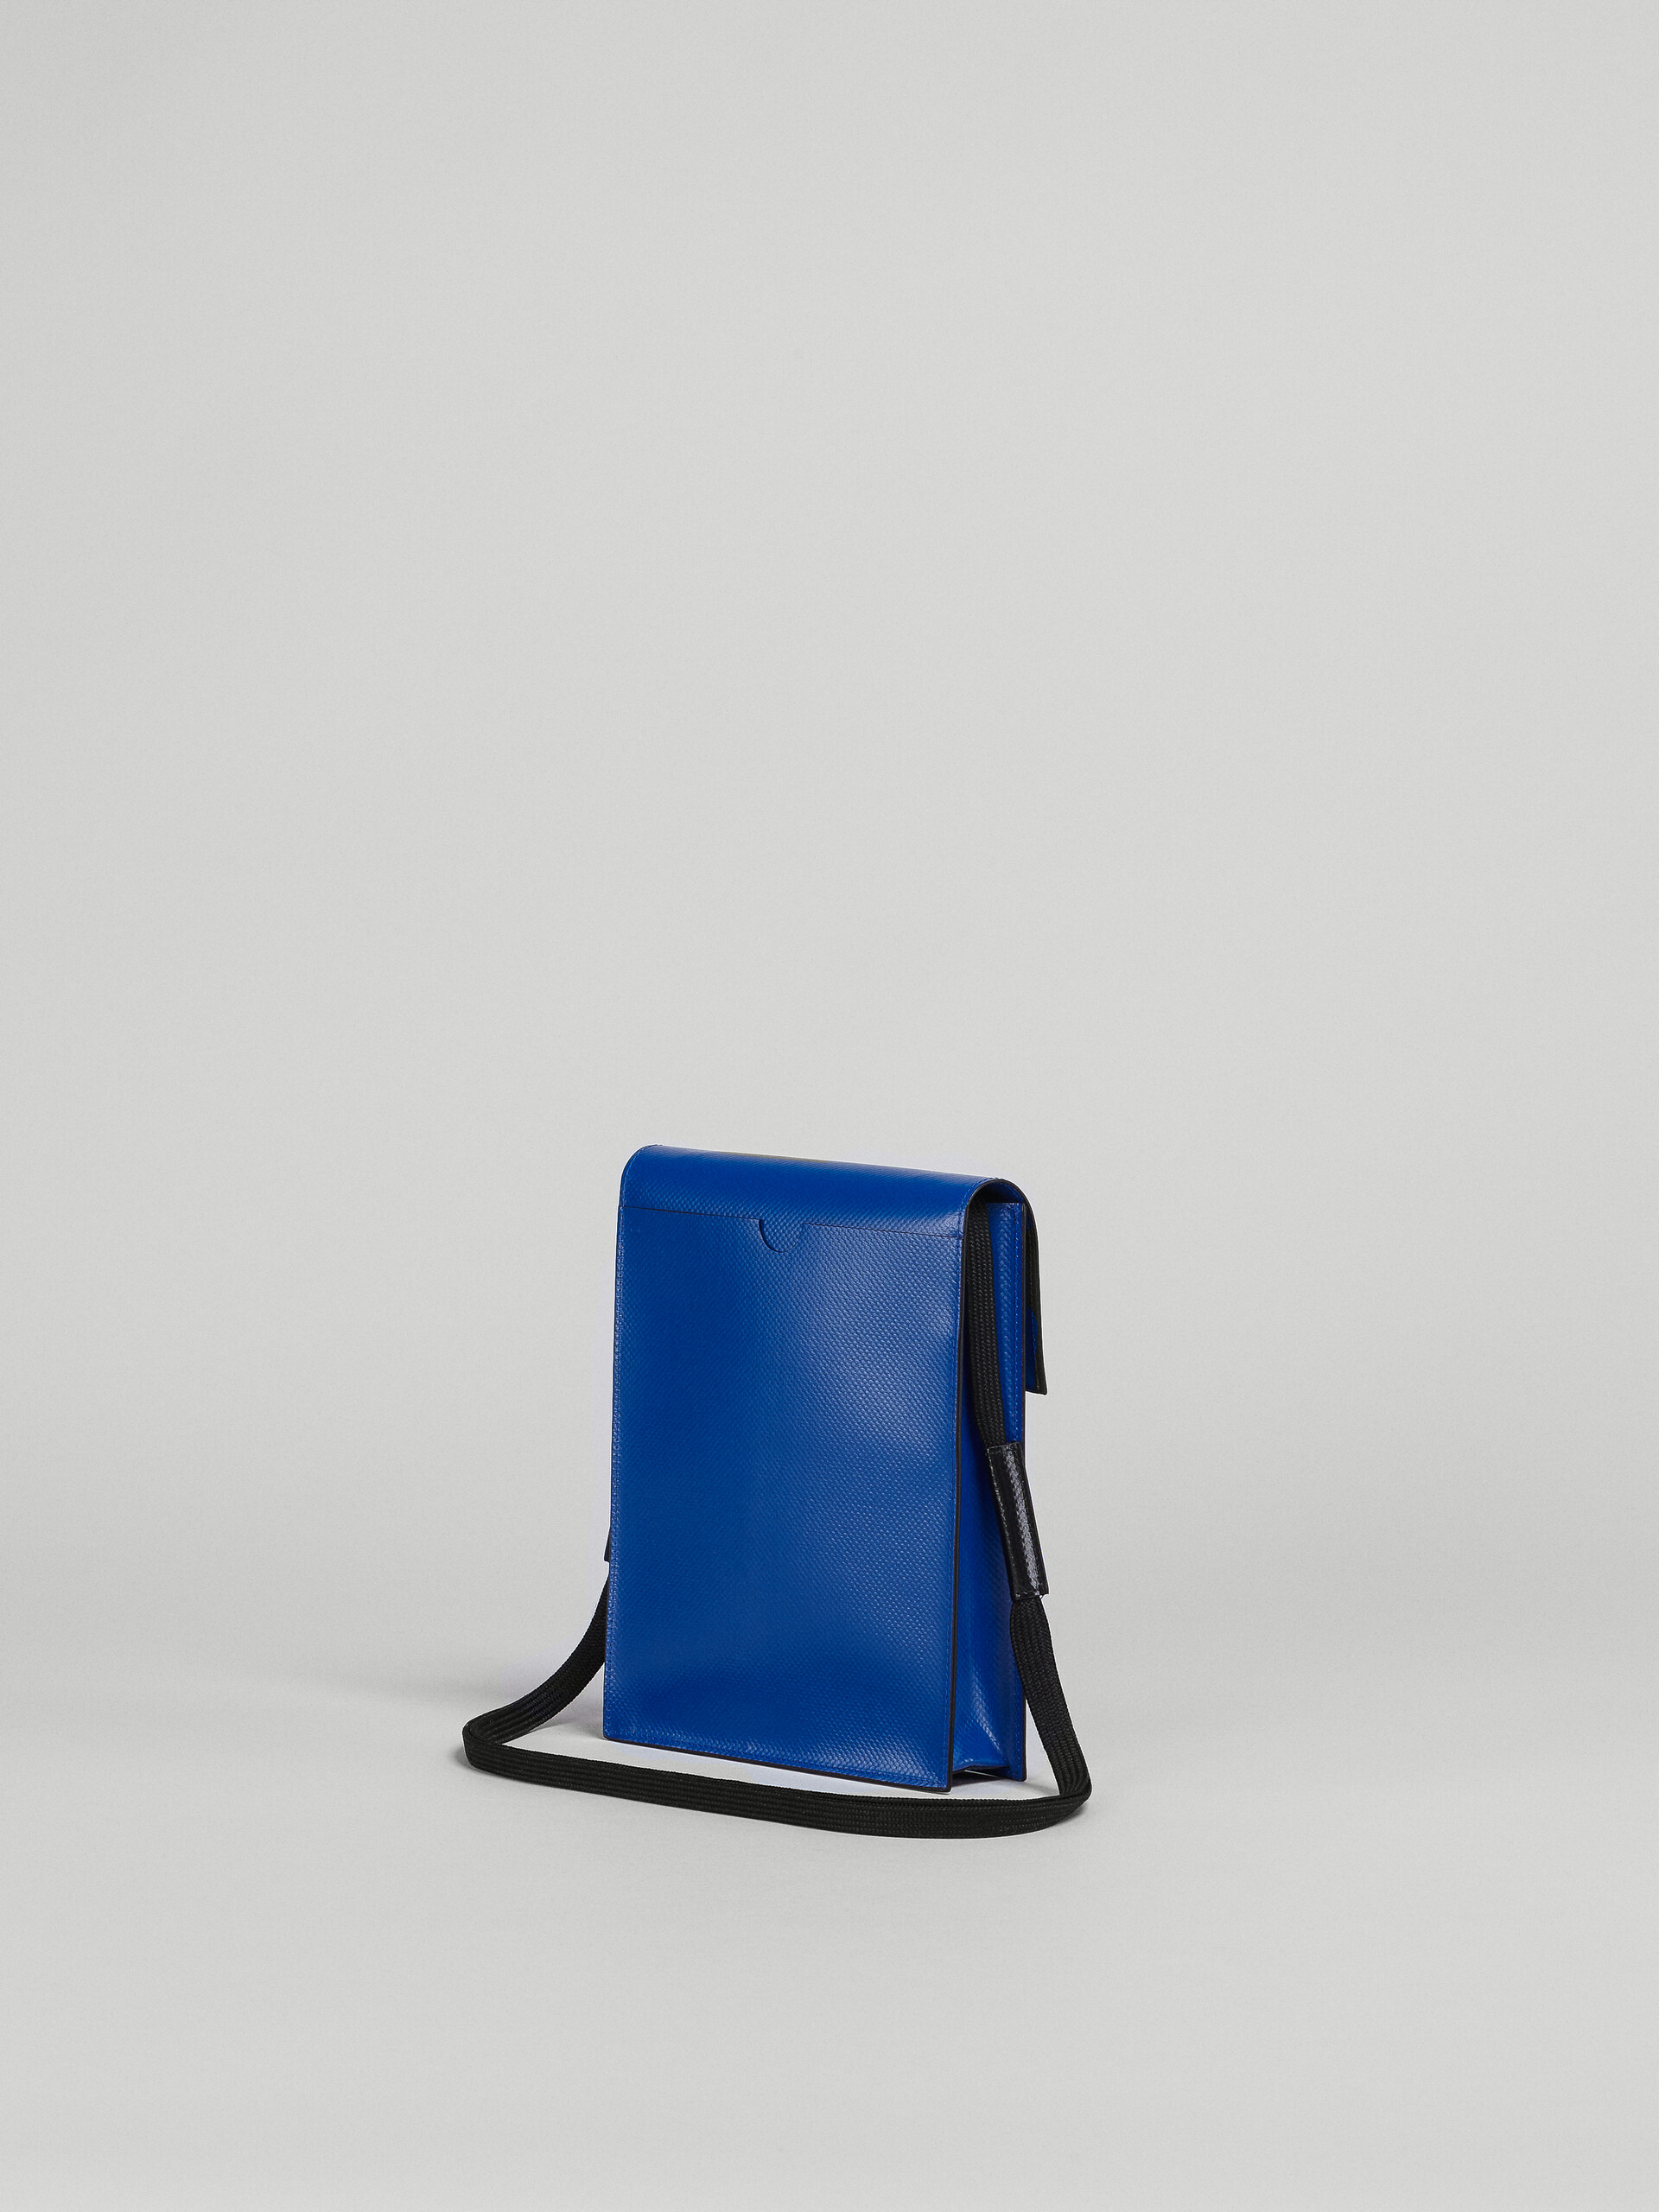 Black and blue TRIBECA messenger bag - Shoulder Bags - Image 3